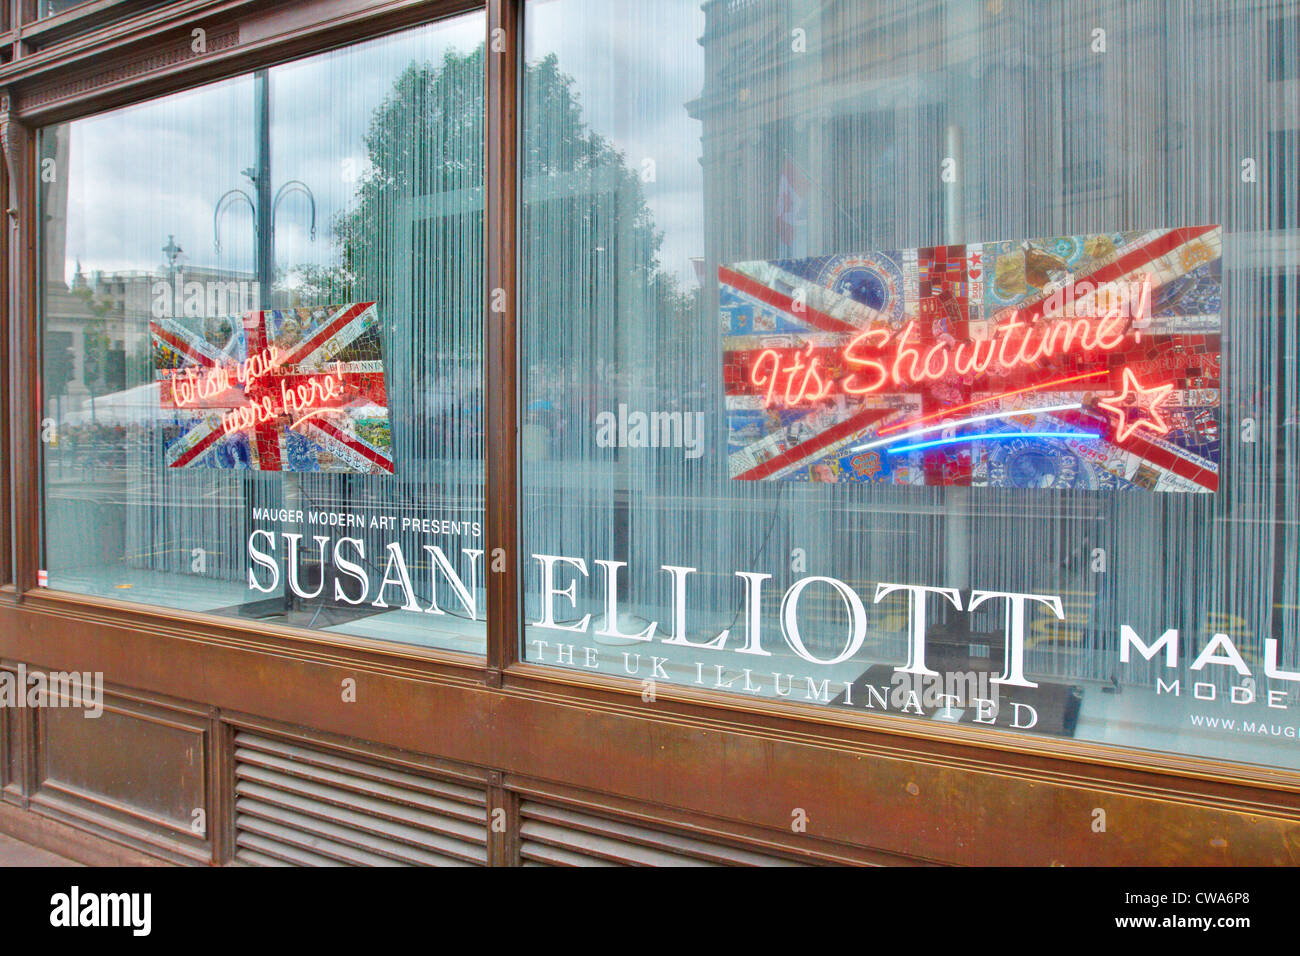 Le néon et les drapeaux de la mosaïque de l'artiste Susan Elliott sur l'affichage dans la Galerie moderne, Londres Mauger Banque D'Images